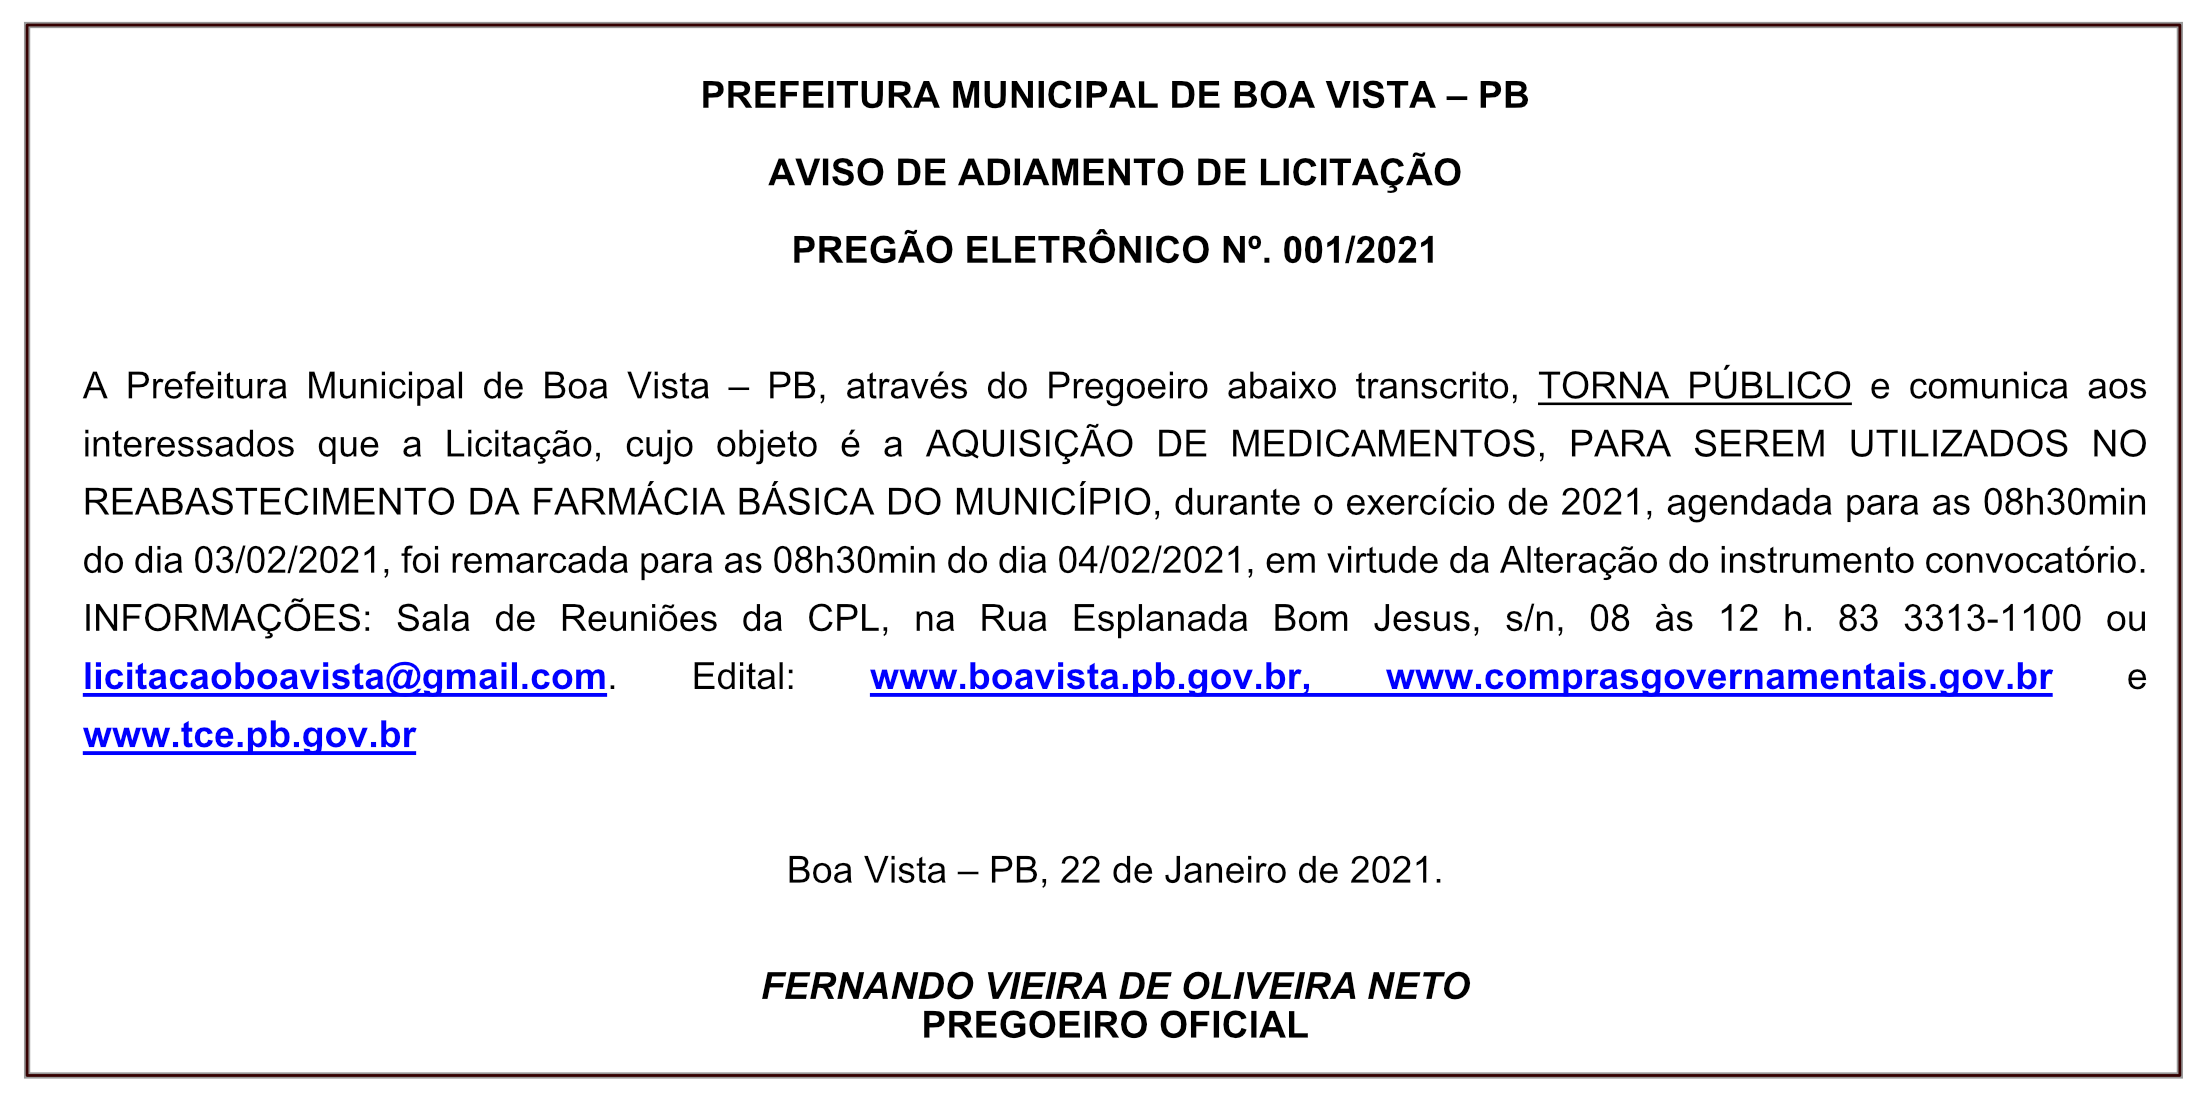 PREFEITURA MUNICIPAL DE BOA VISTA  – AVISO DE ADIAMENTO DE LICITAÇÃO – PREGÃO ELETRÔNICO Nº 001/2021